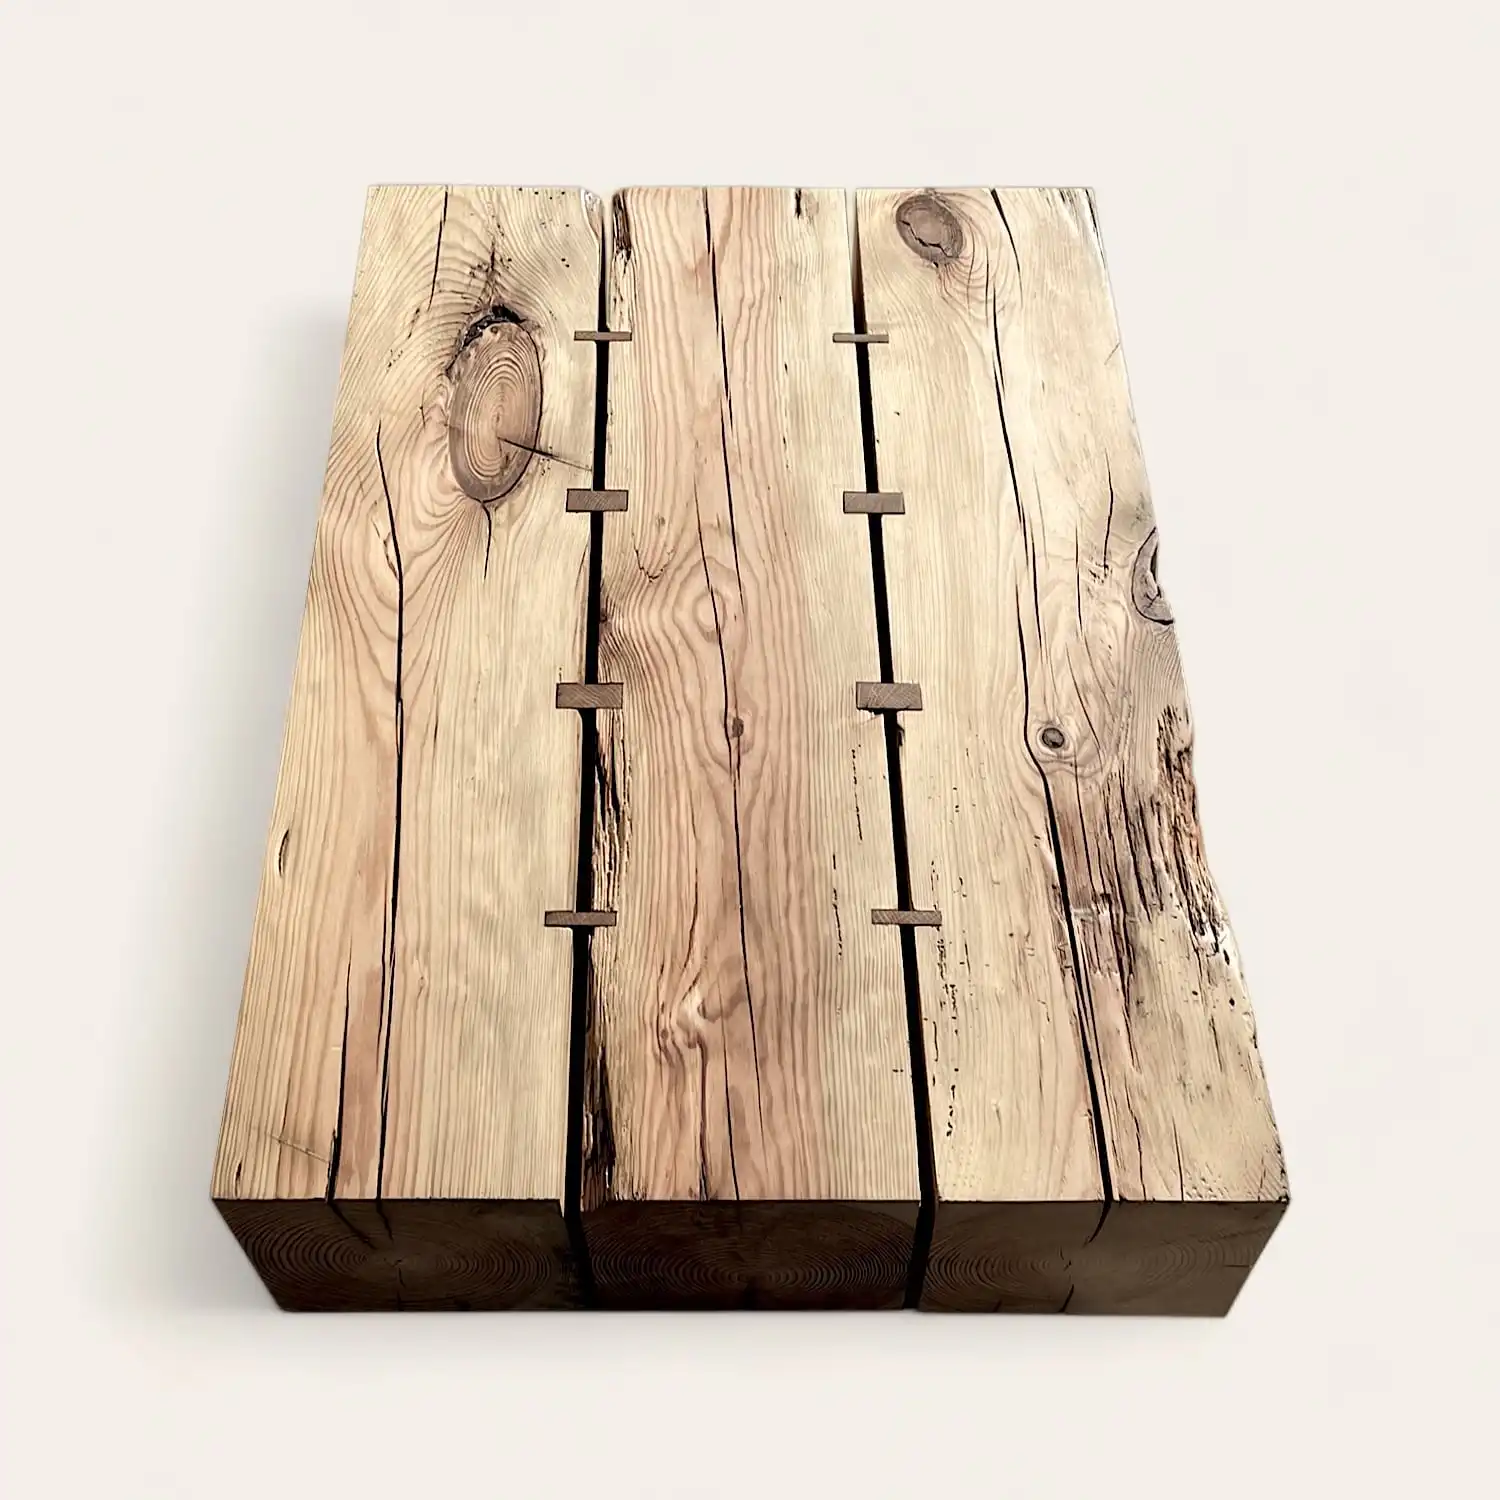  Une planche de bois ancien percée de trous. 